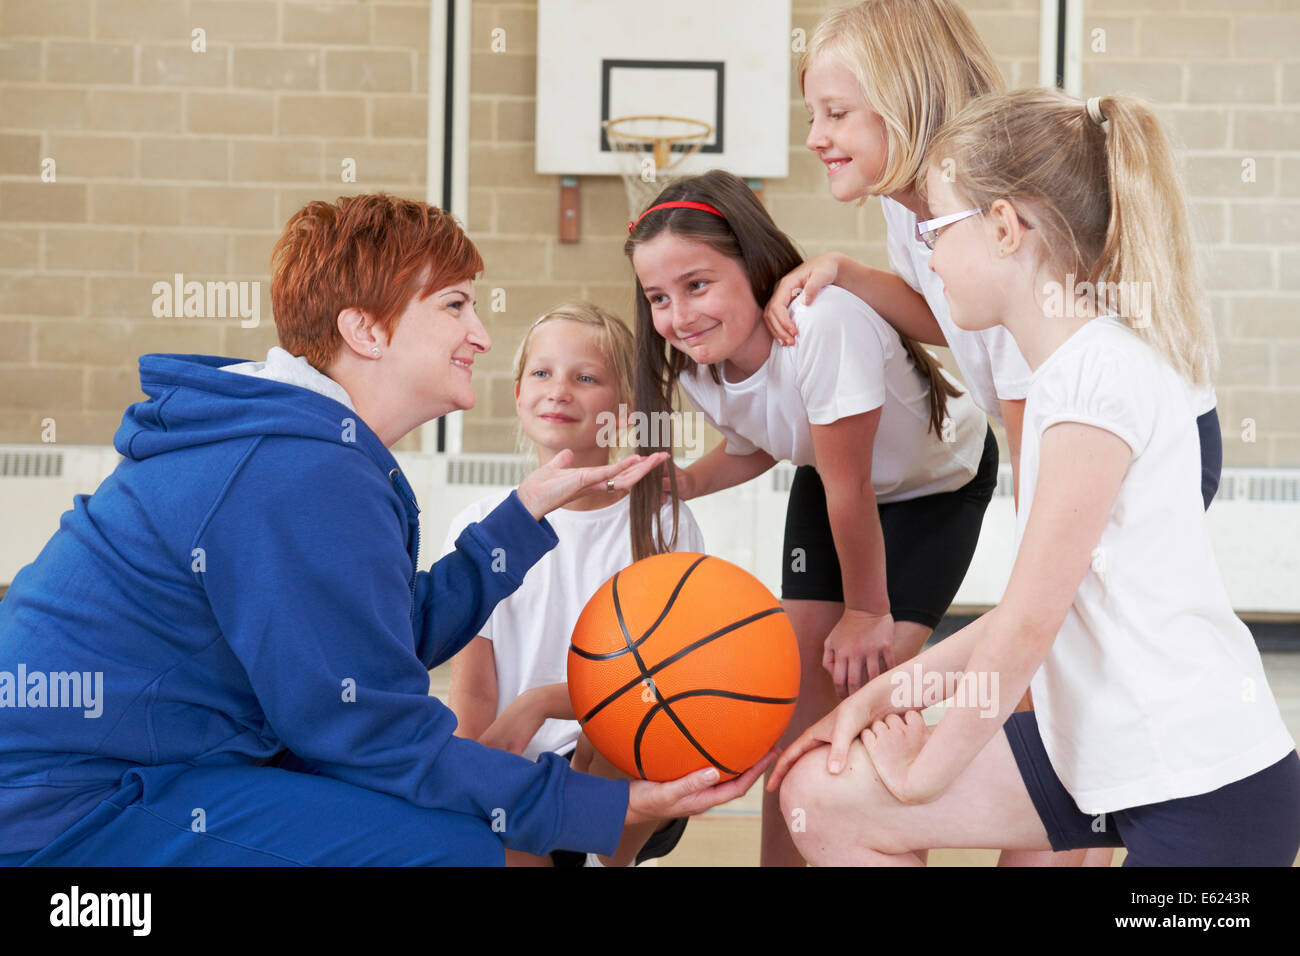 L'équipe de parler à l'enseignant de donner l'équipe de basket-ball de l'école Banque D'Images